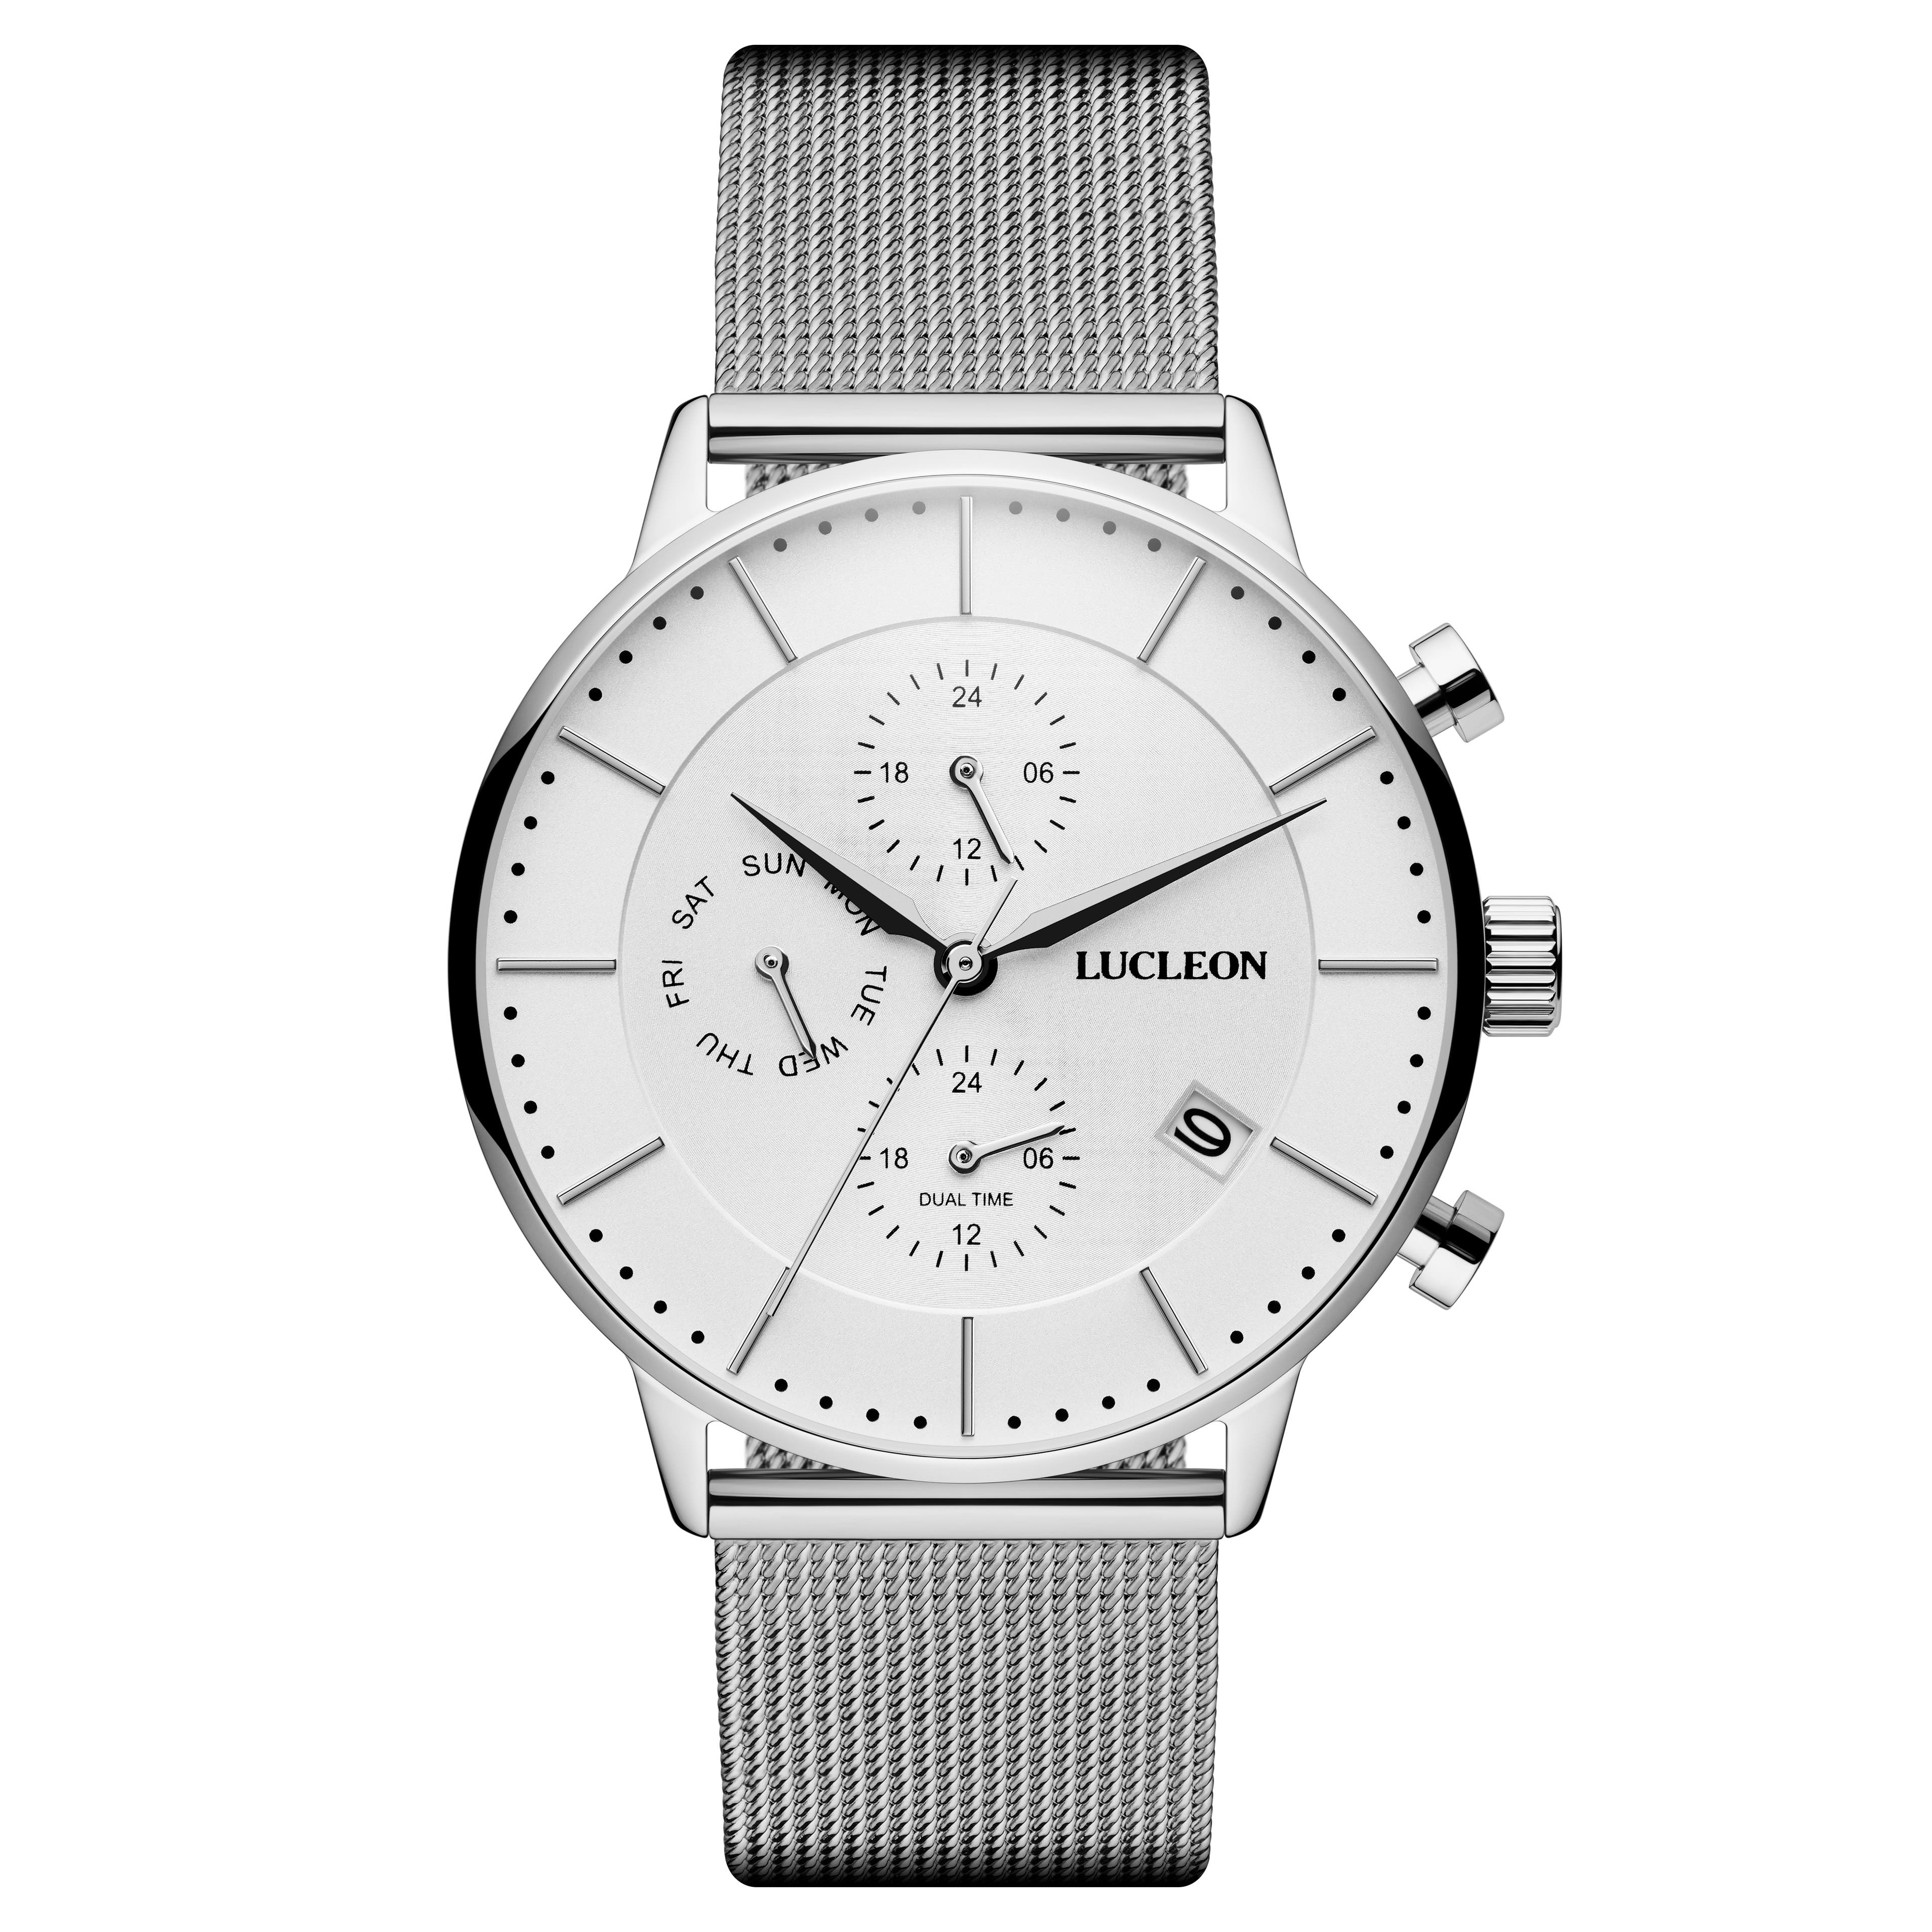 Ternion | Reloj con doble huso horario de acero inoxidable en blanco y plateado